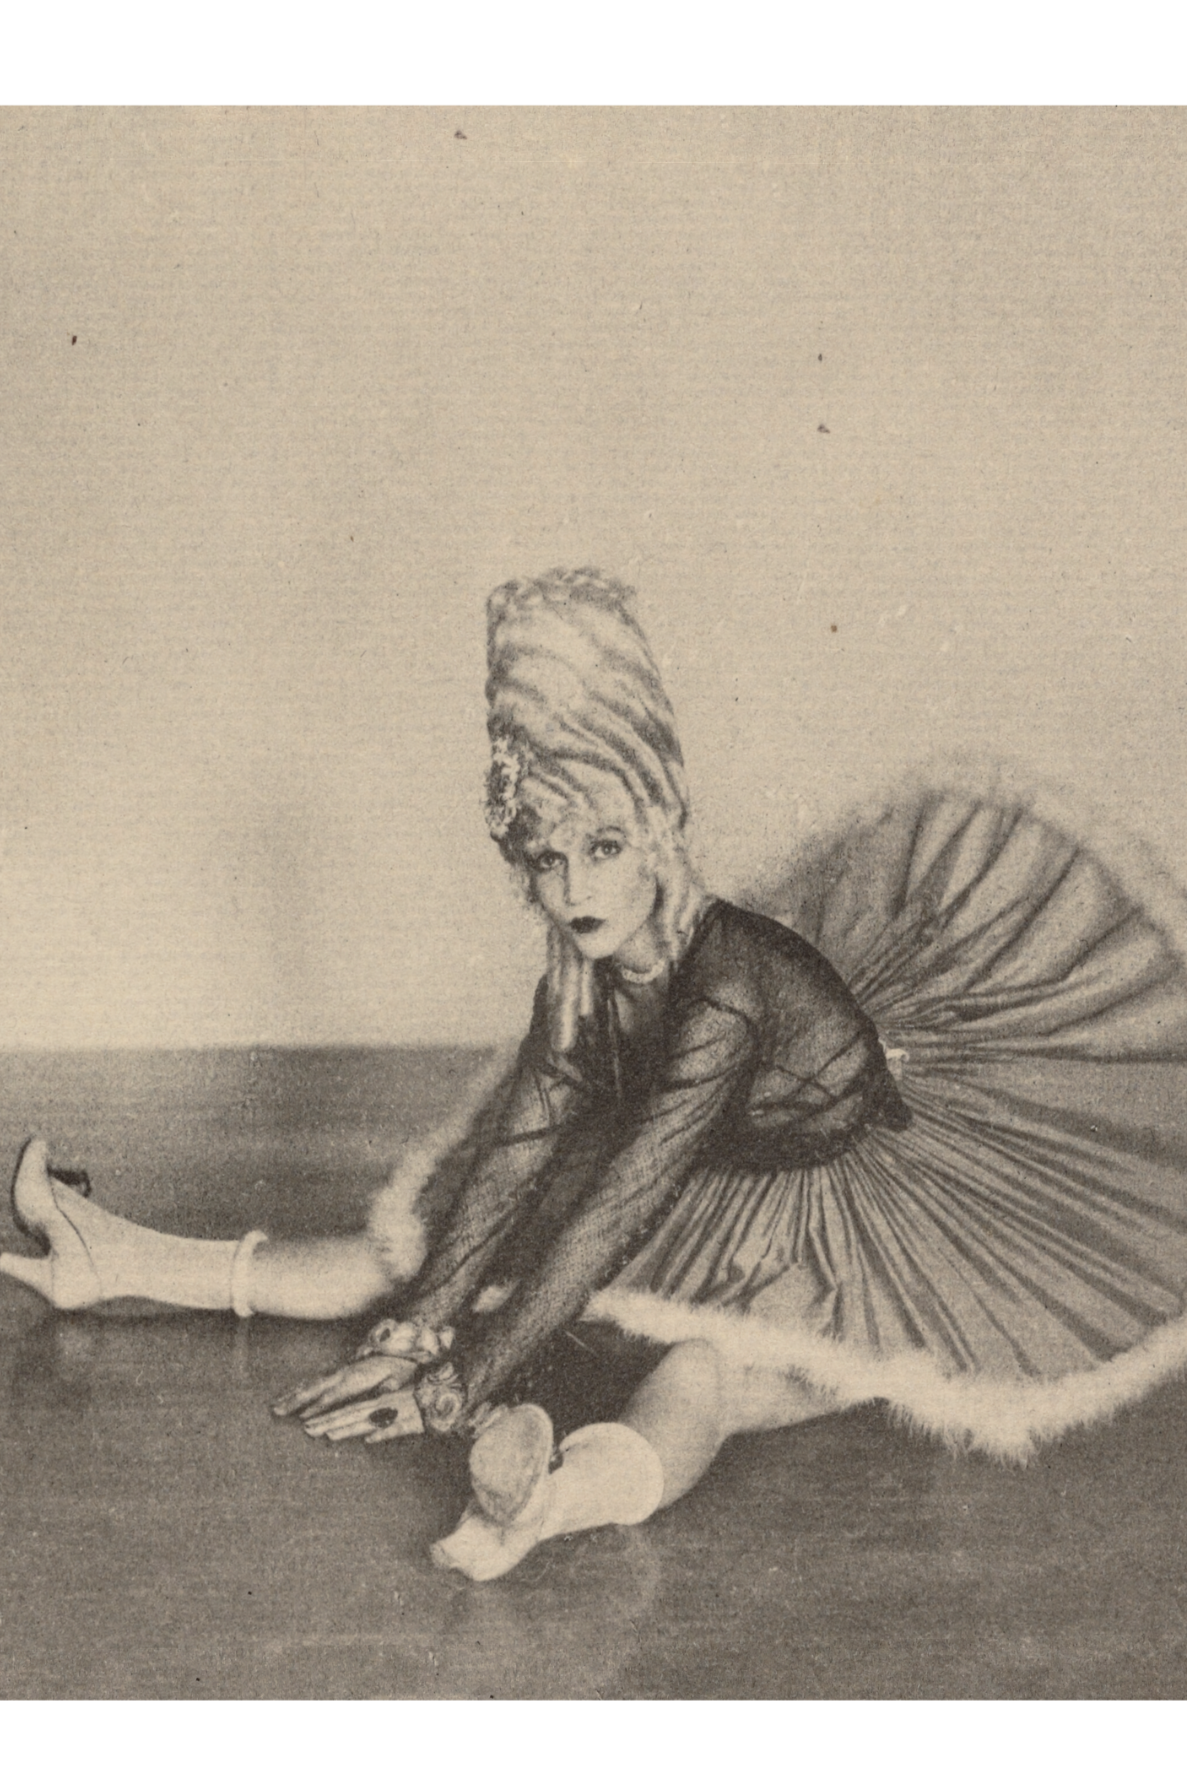 Femme en costume de canette assise sur le sol avec les jambes écartées par Arthur F. Kales - vers 1920 - Carte postale